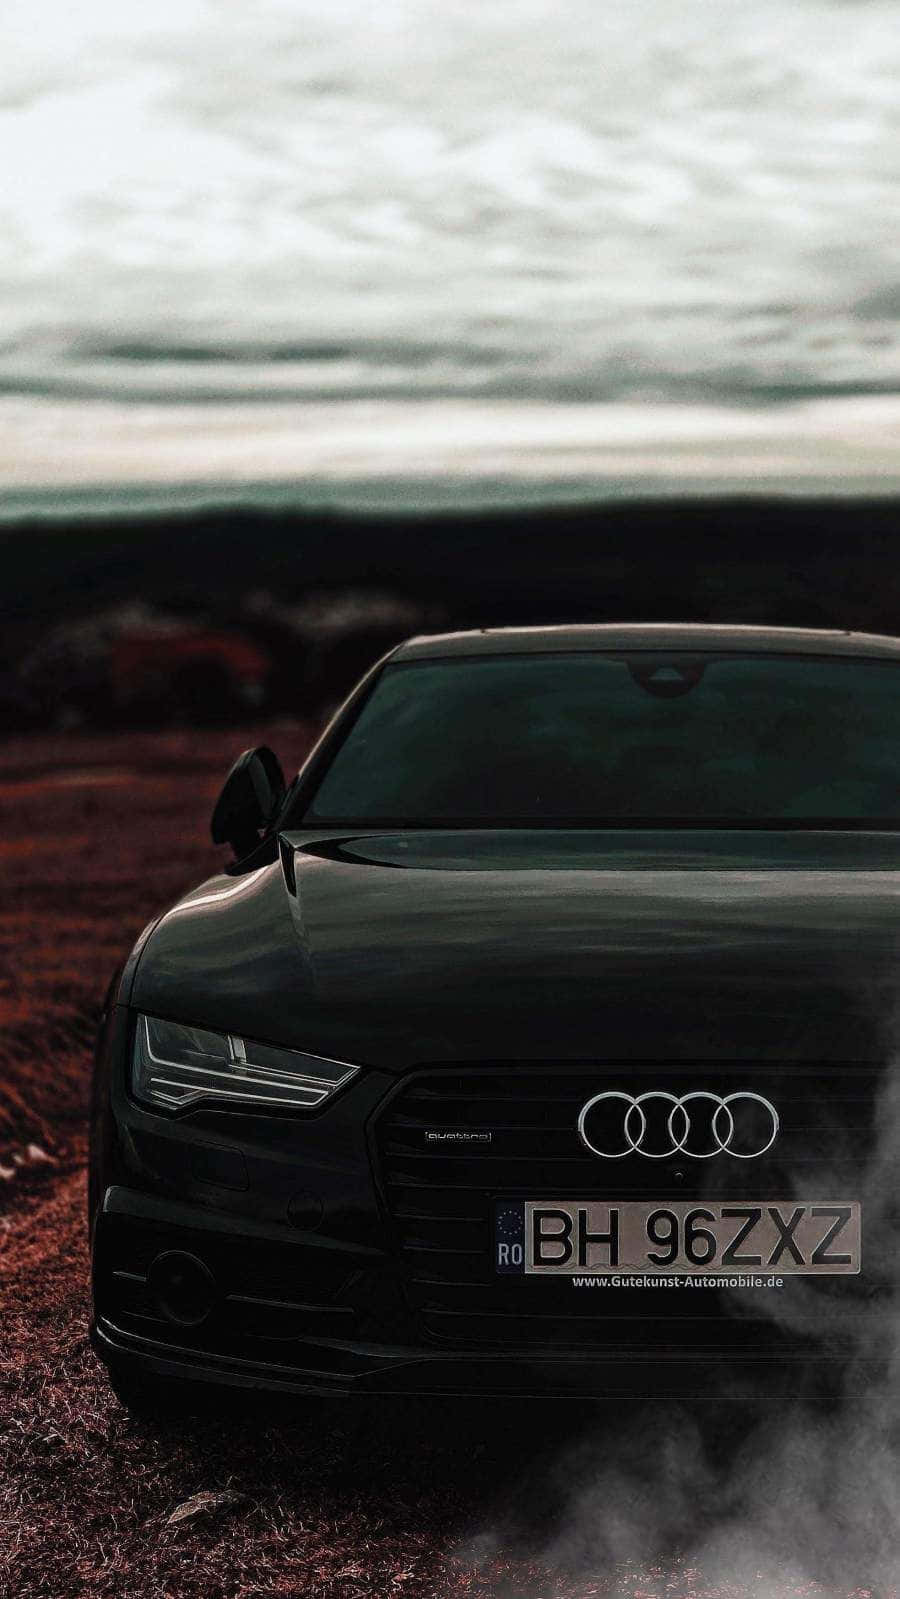 Et lækkert Audi iPhone koncept for teknologibegejstrede bilentusiaster. Wallpaper